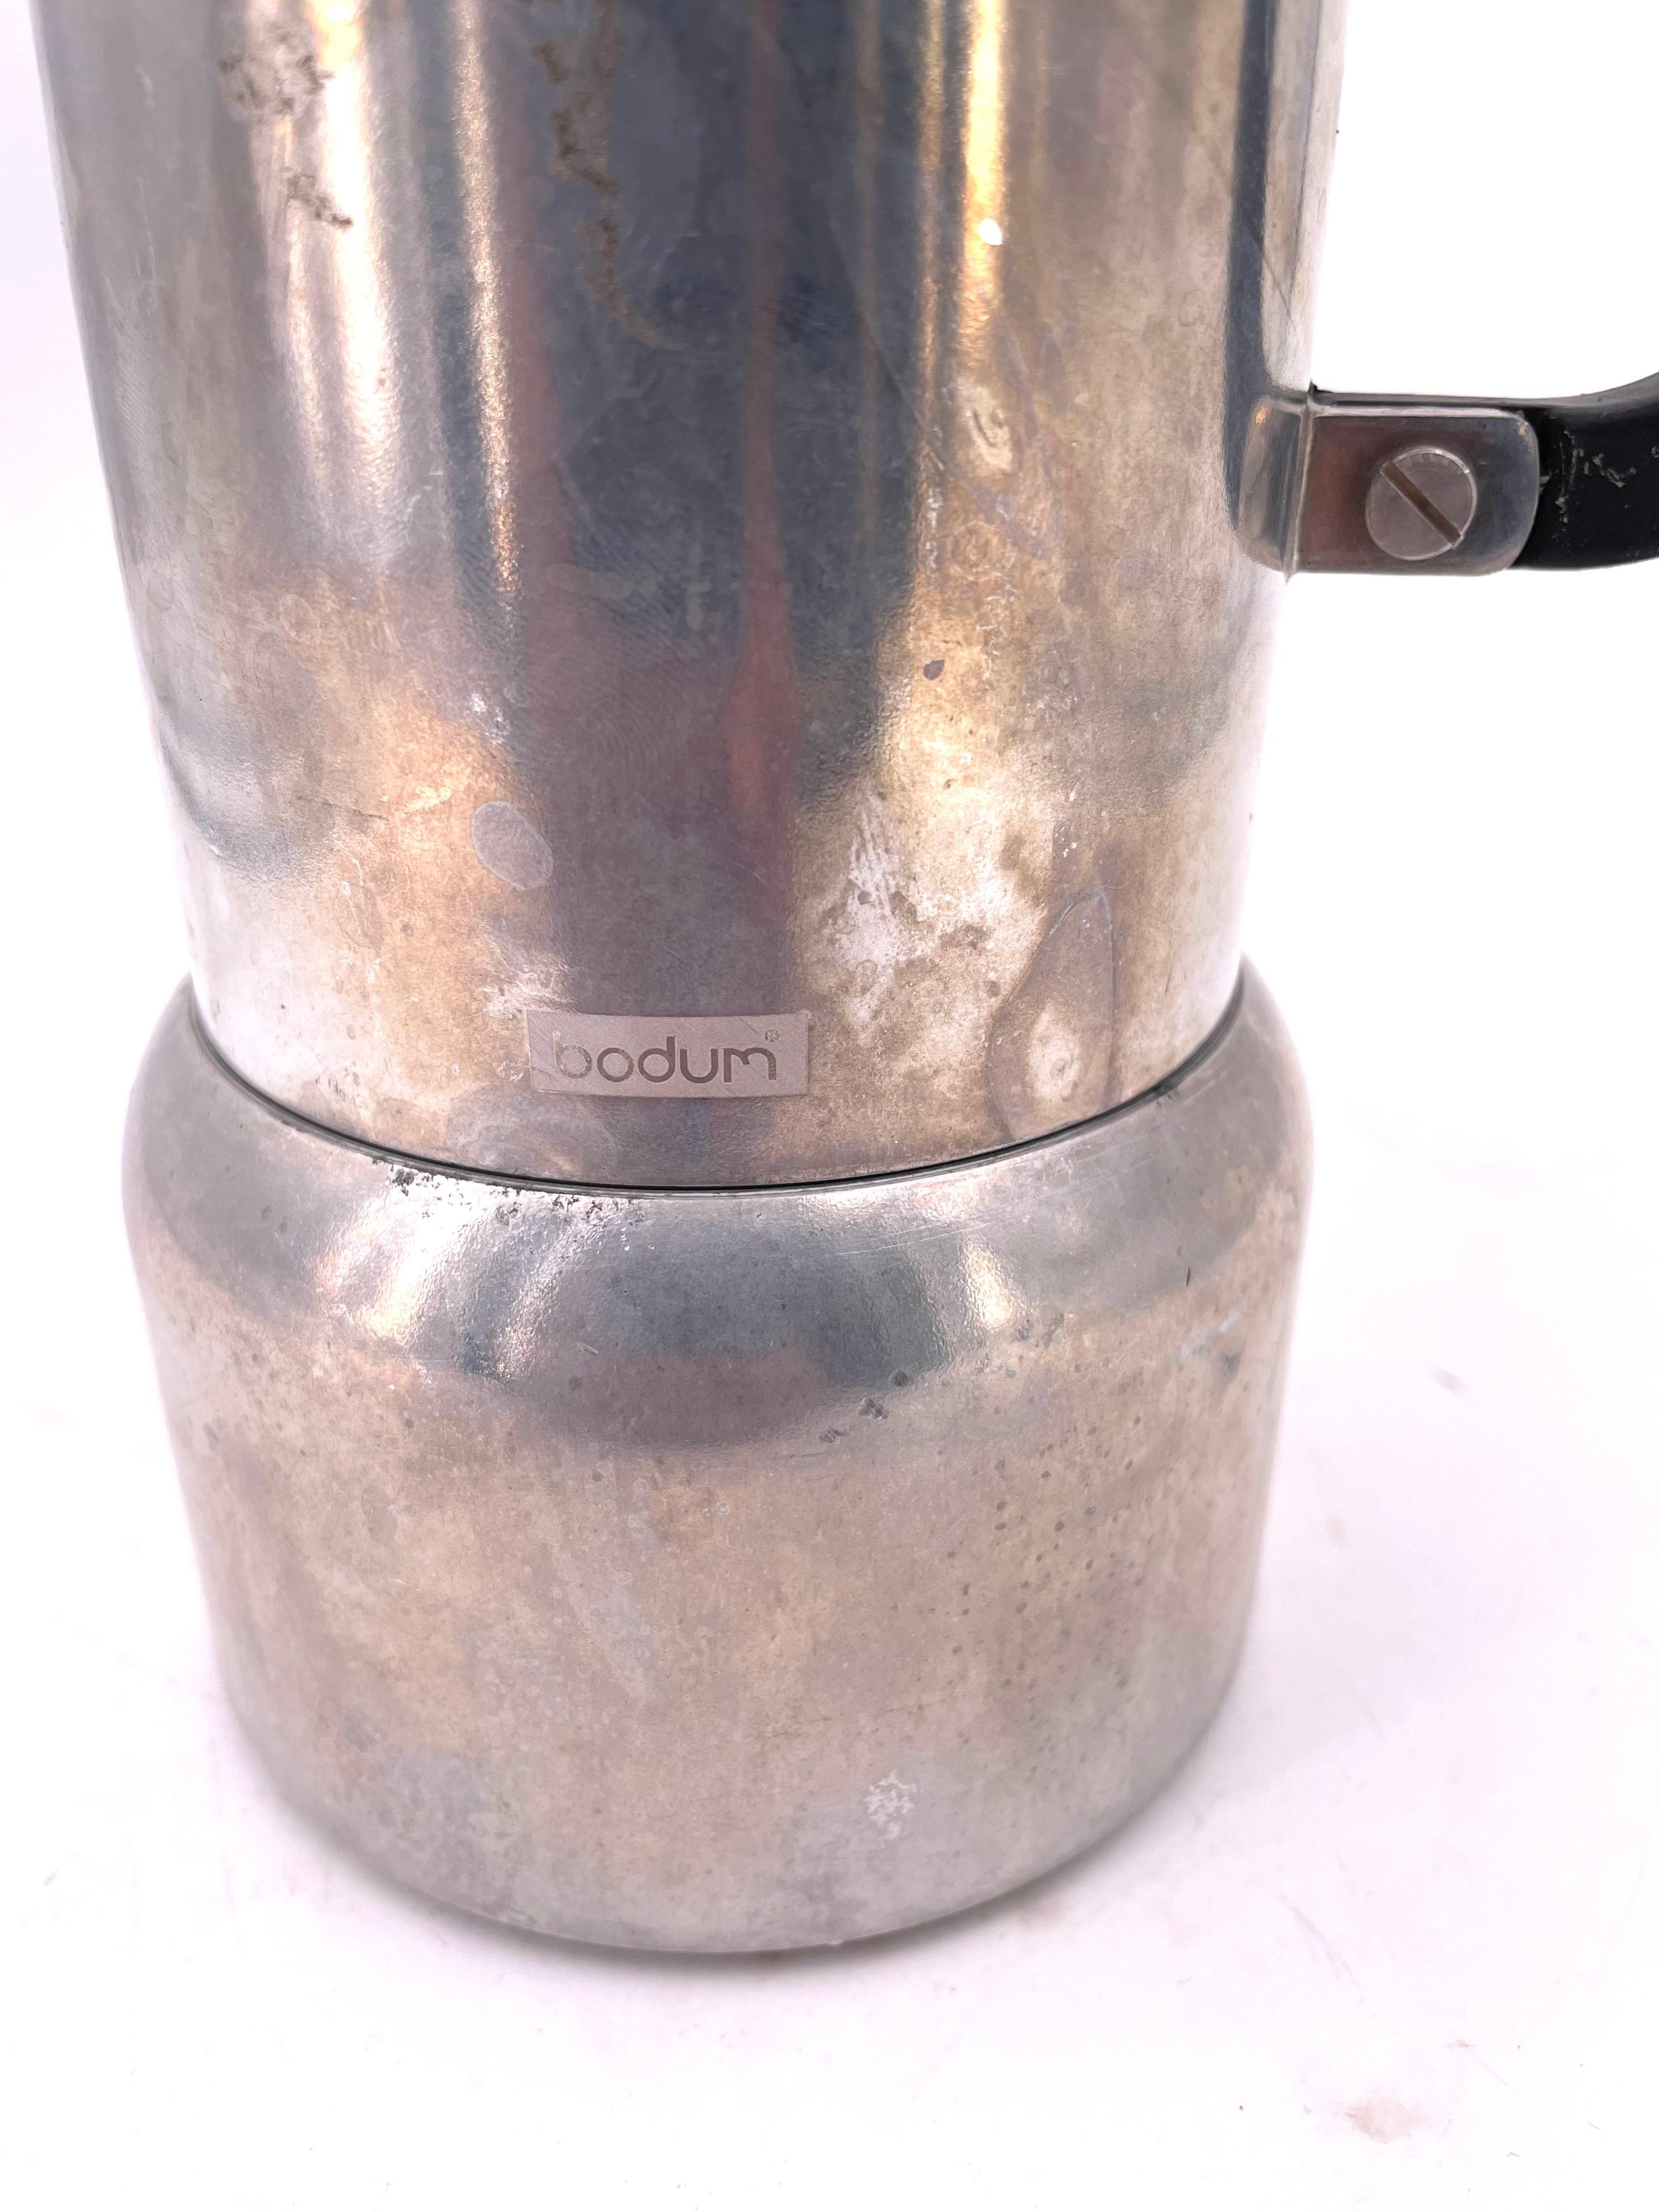 bodum chambord espresso maker